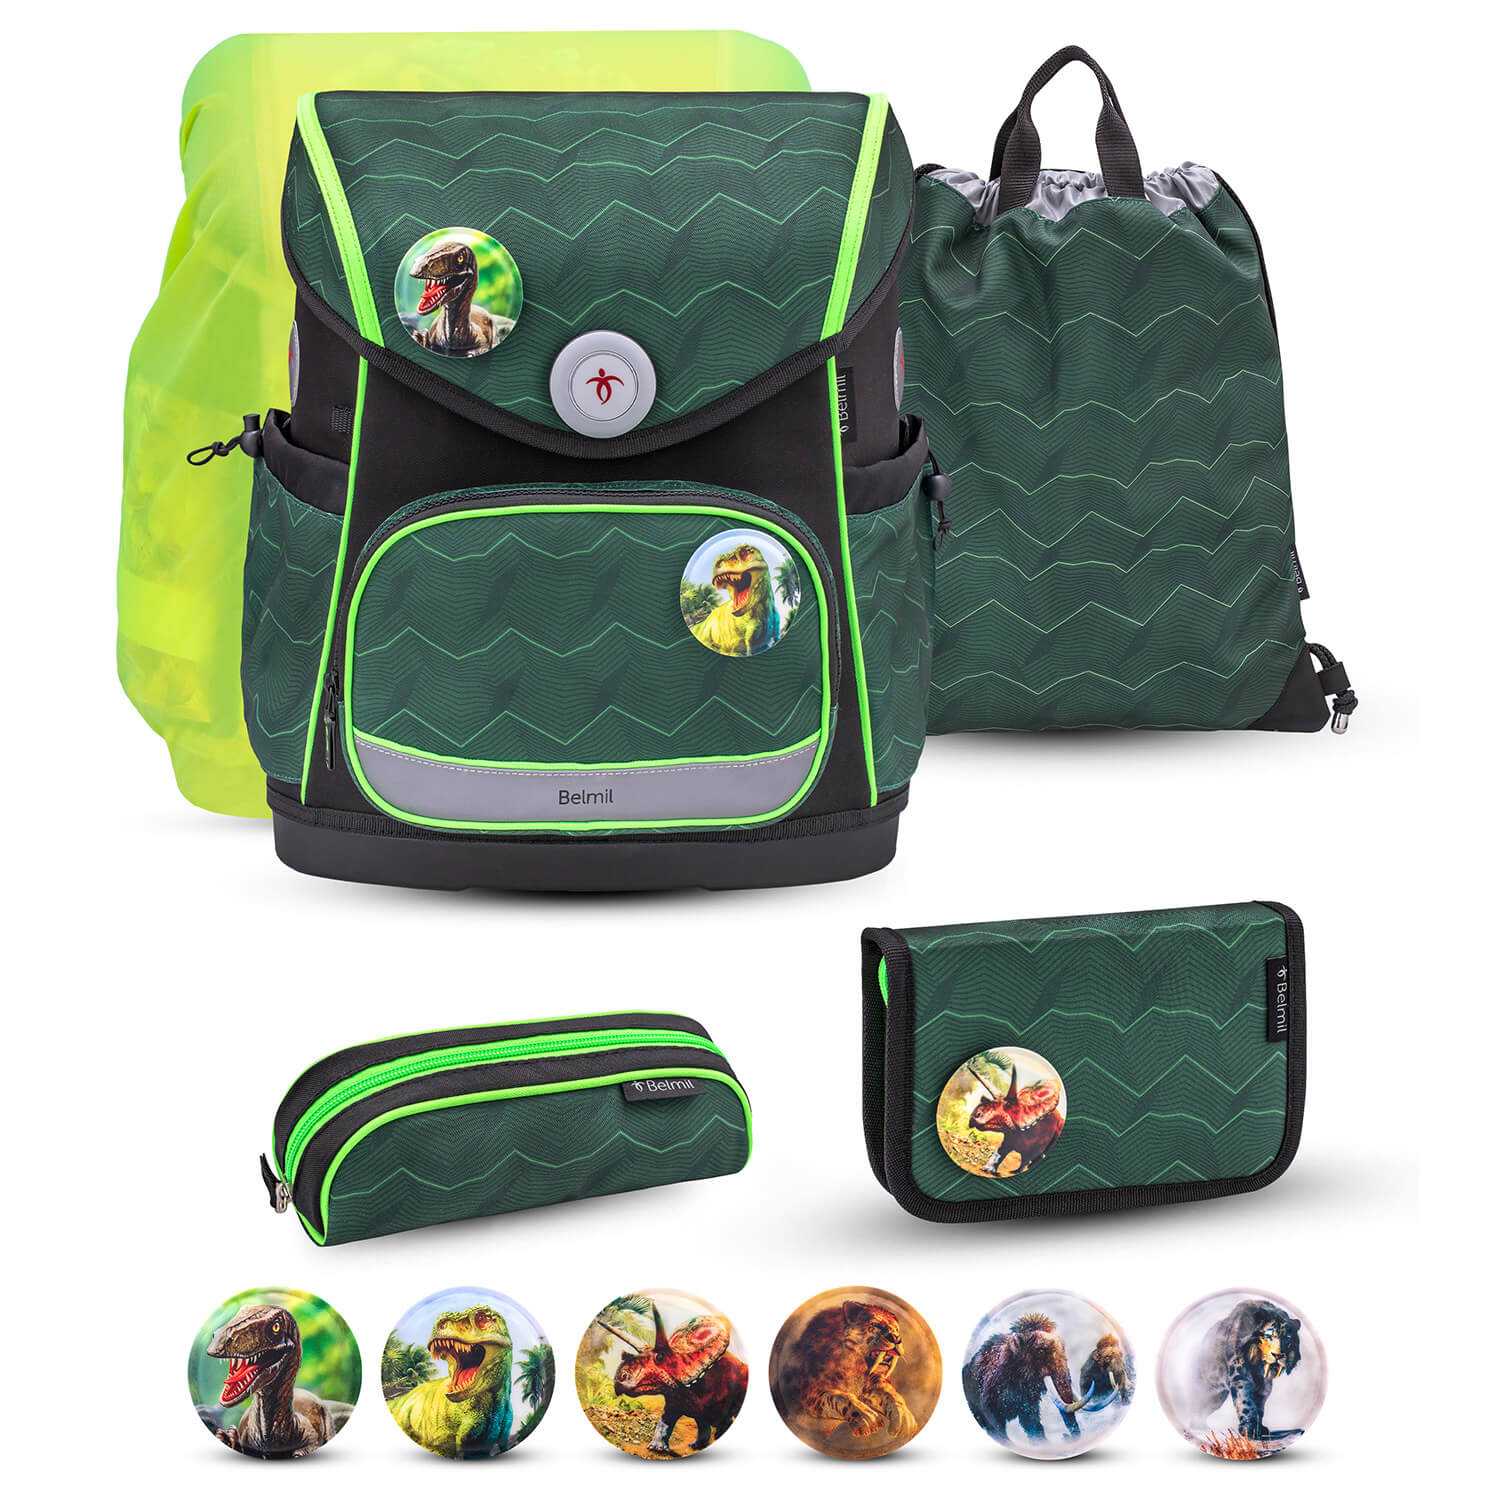 Premium Compact Plus Twist of Lime Schoolbag set 6pcs.